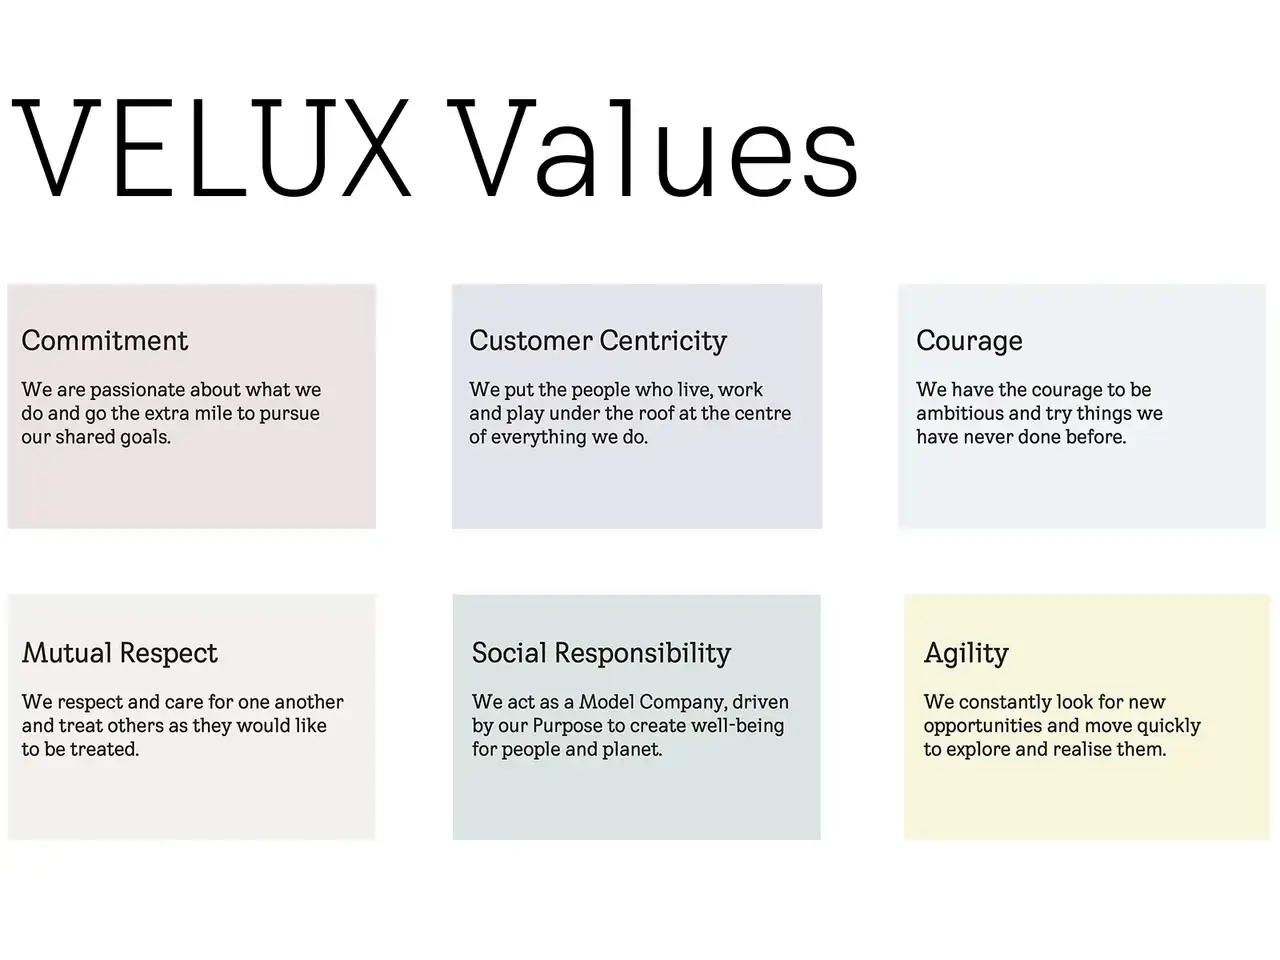 Bild zeigt die Werte von VELUX: Engagement, Kundenorientierung, Mut, gegenseitiger Respekt, soziale Verantwortung, Agilität.